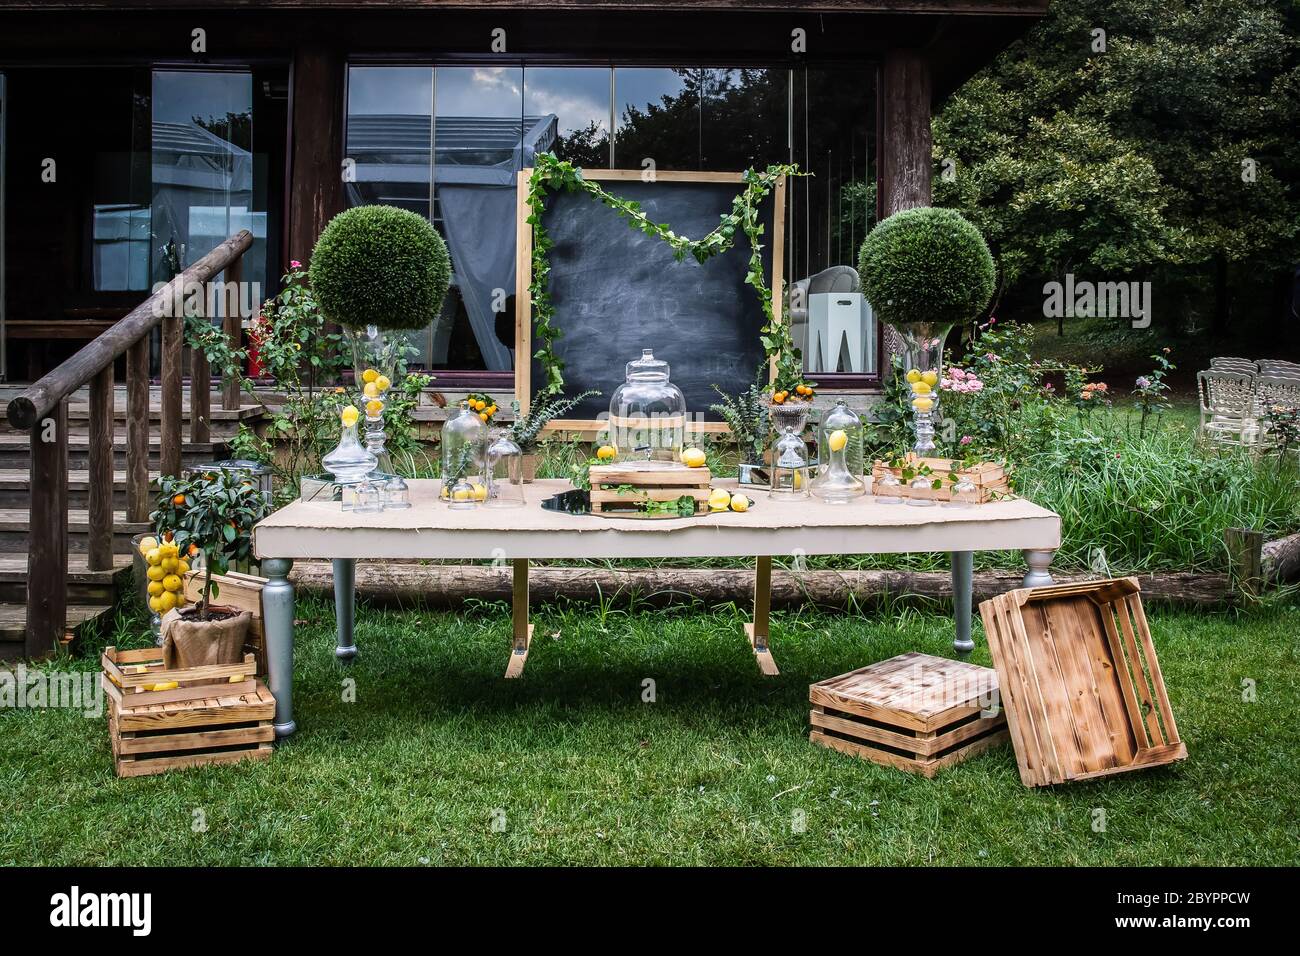 Eine luxuriöse Hochzeitsempfangsbar im Freien, Limonade-Bar auf dem Land,  eine leere Tafel, ein Getränkespender aus Glas, Vasen, Zitronen und Holz  Stockfotografie - Alamy